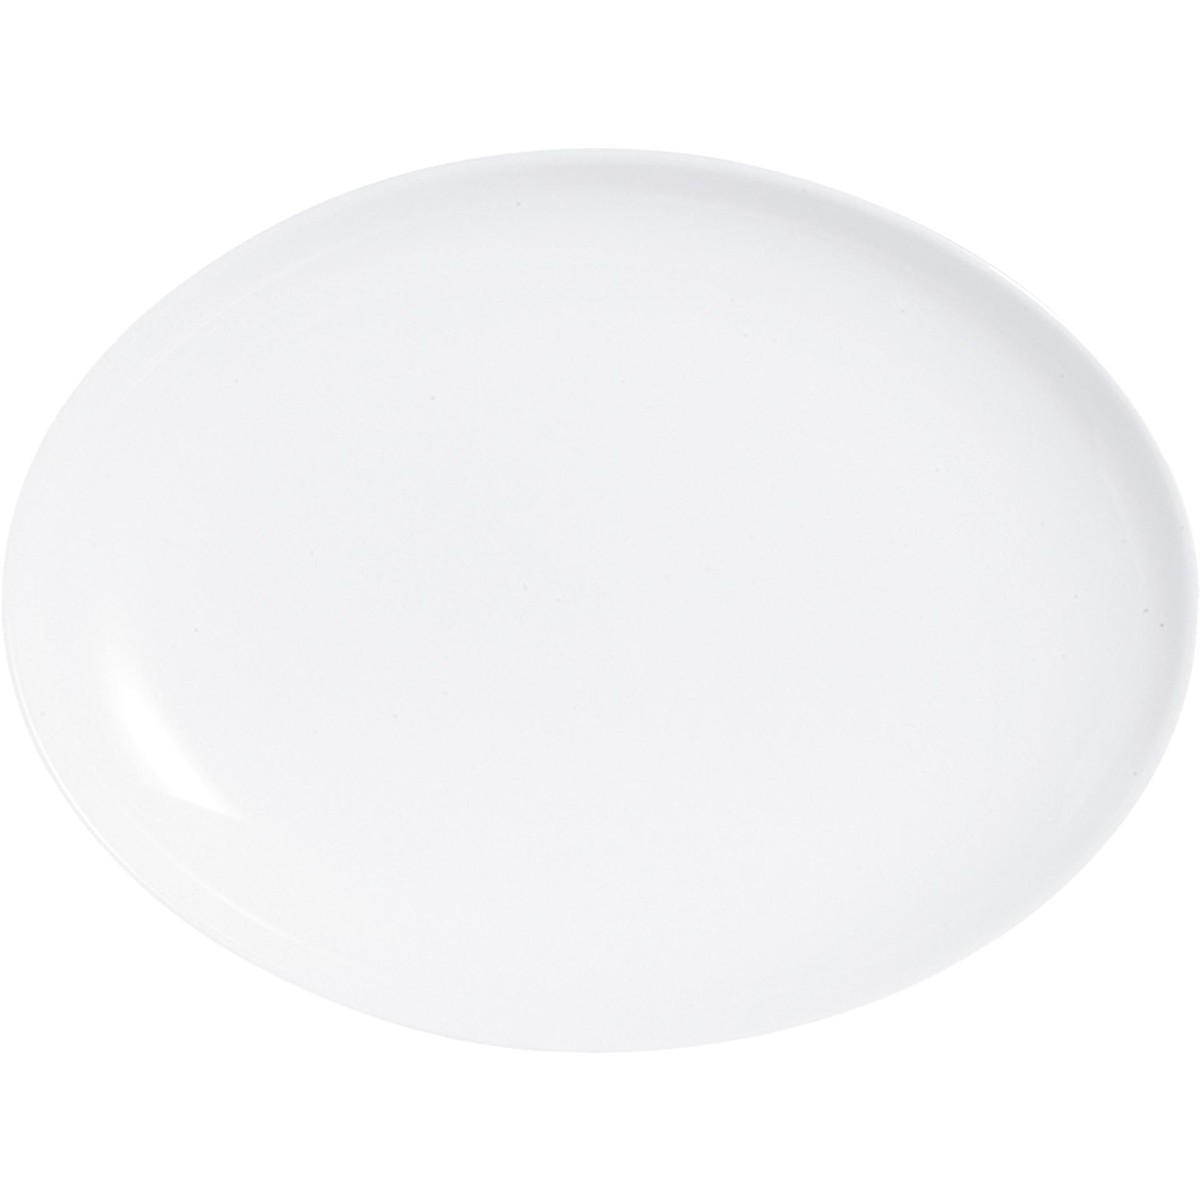 Hartglasgeschirr "Evolution" weiß Platte flach oval 33x25 cm